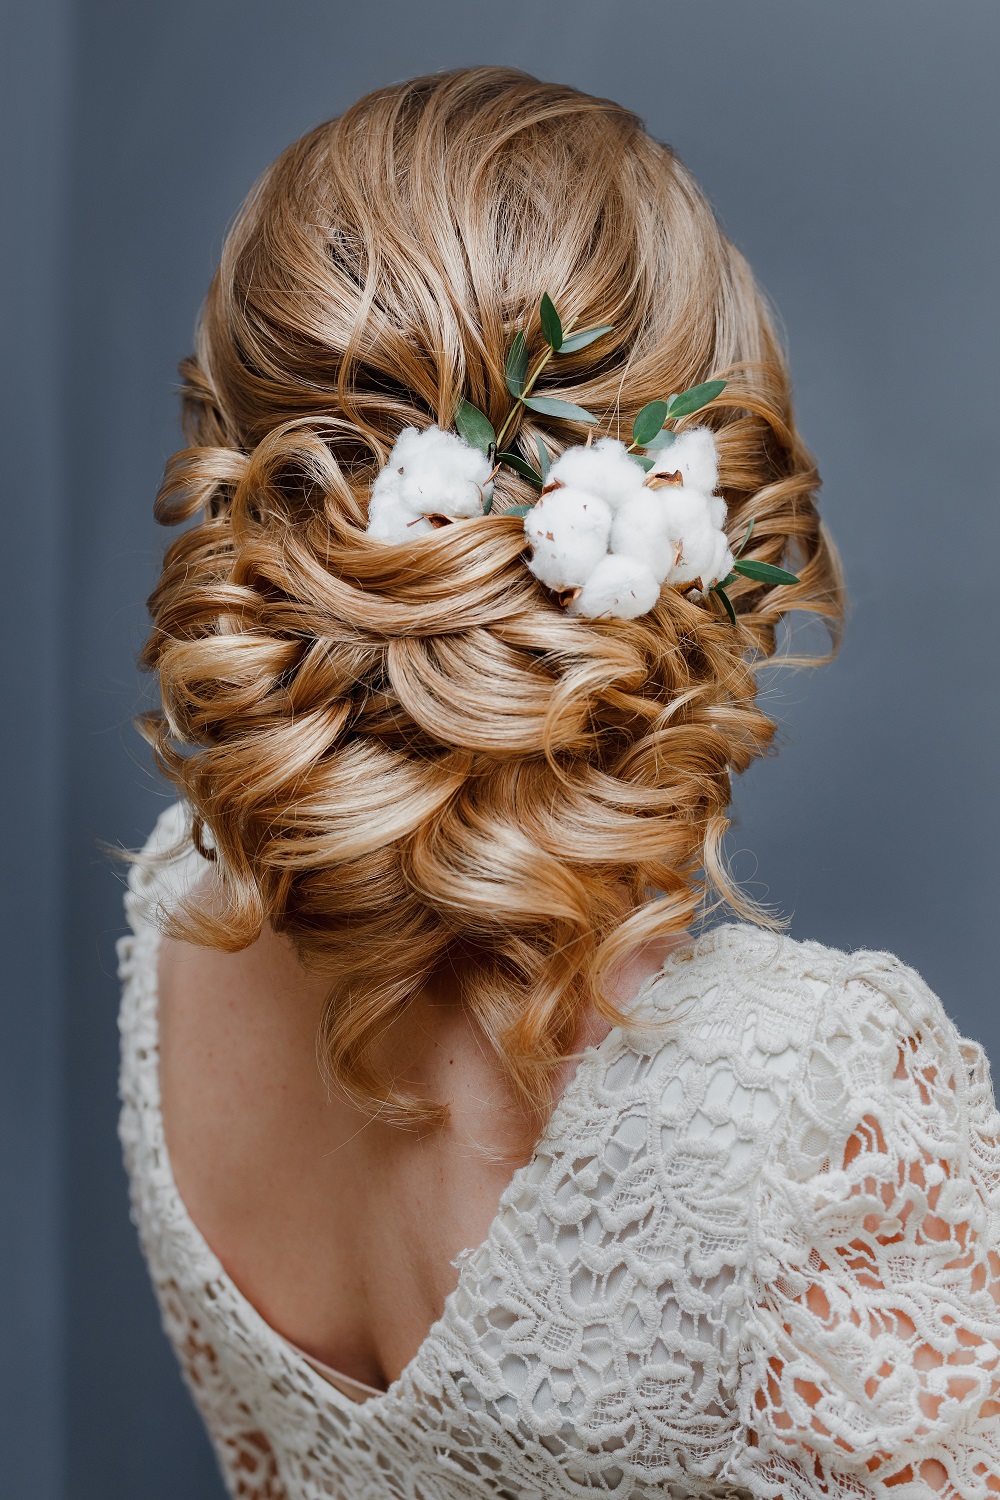 Zmysłowe upięcie włosów z ozdobą z bawełny jako przykład fryzury na wesele.